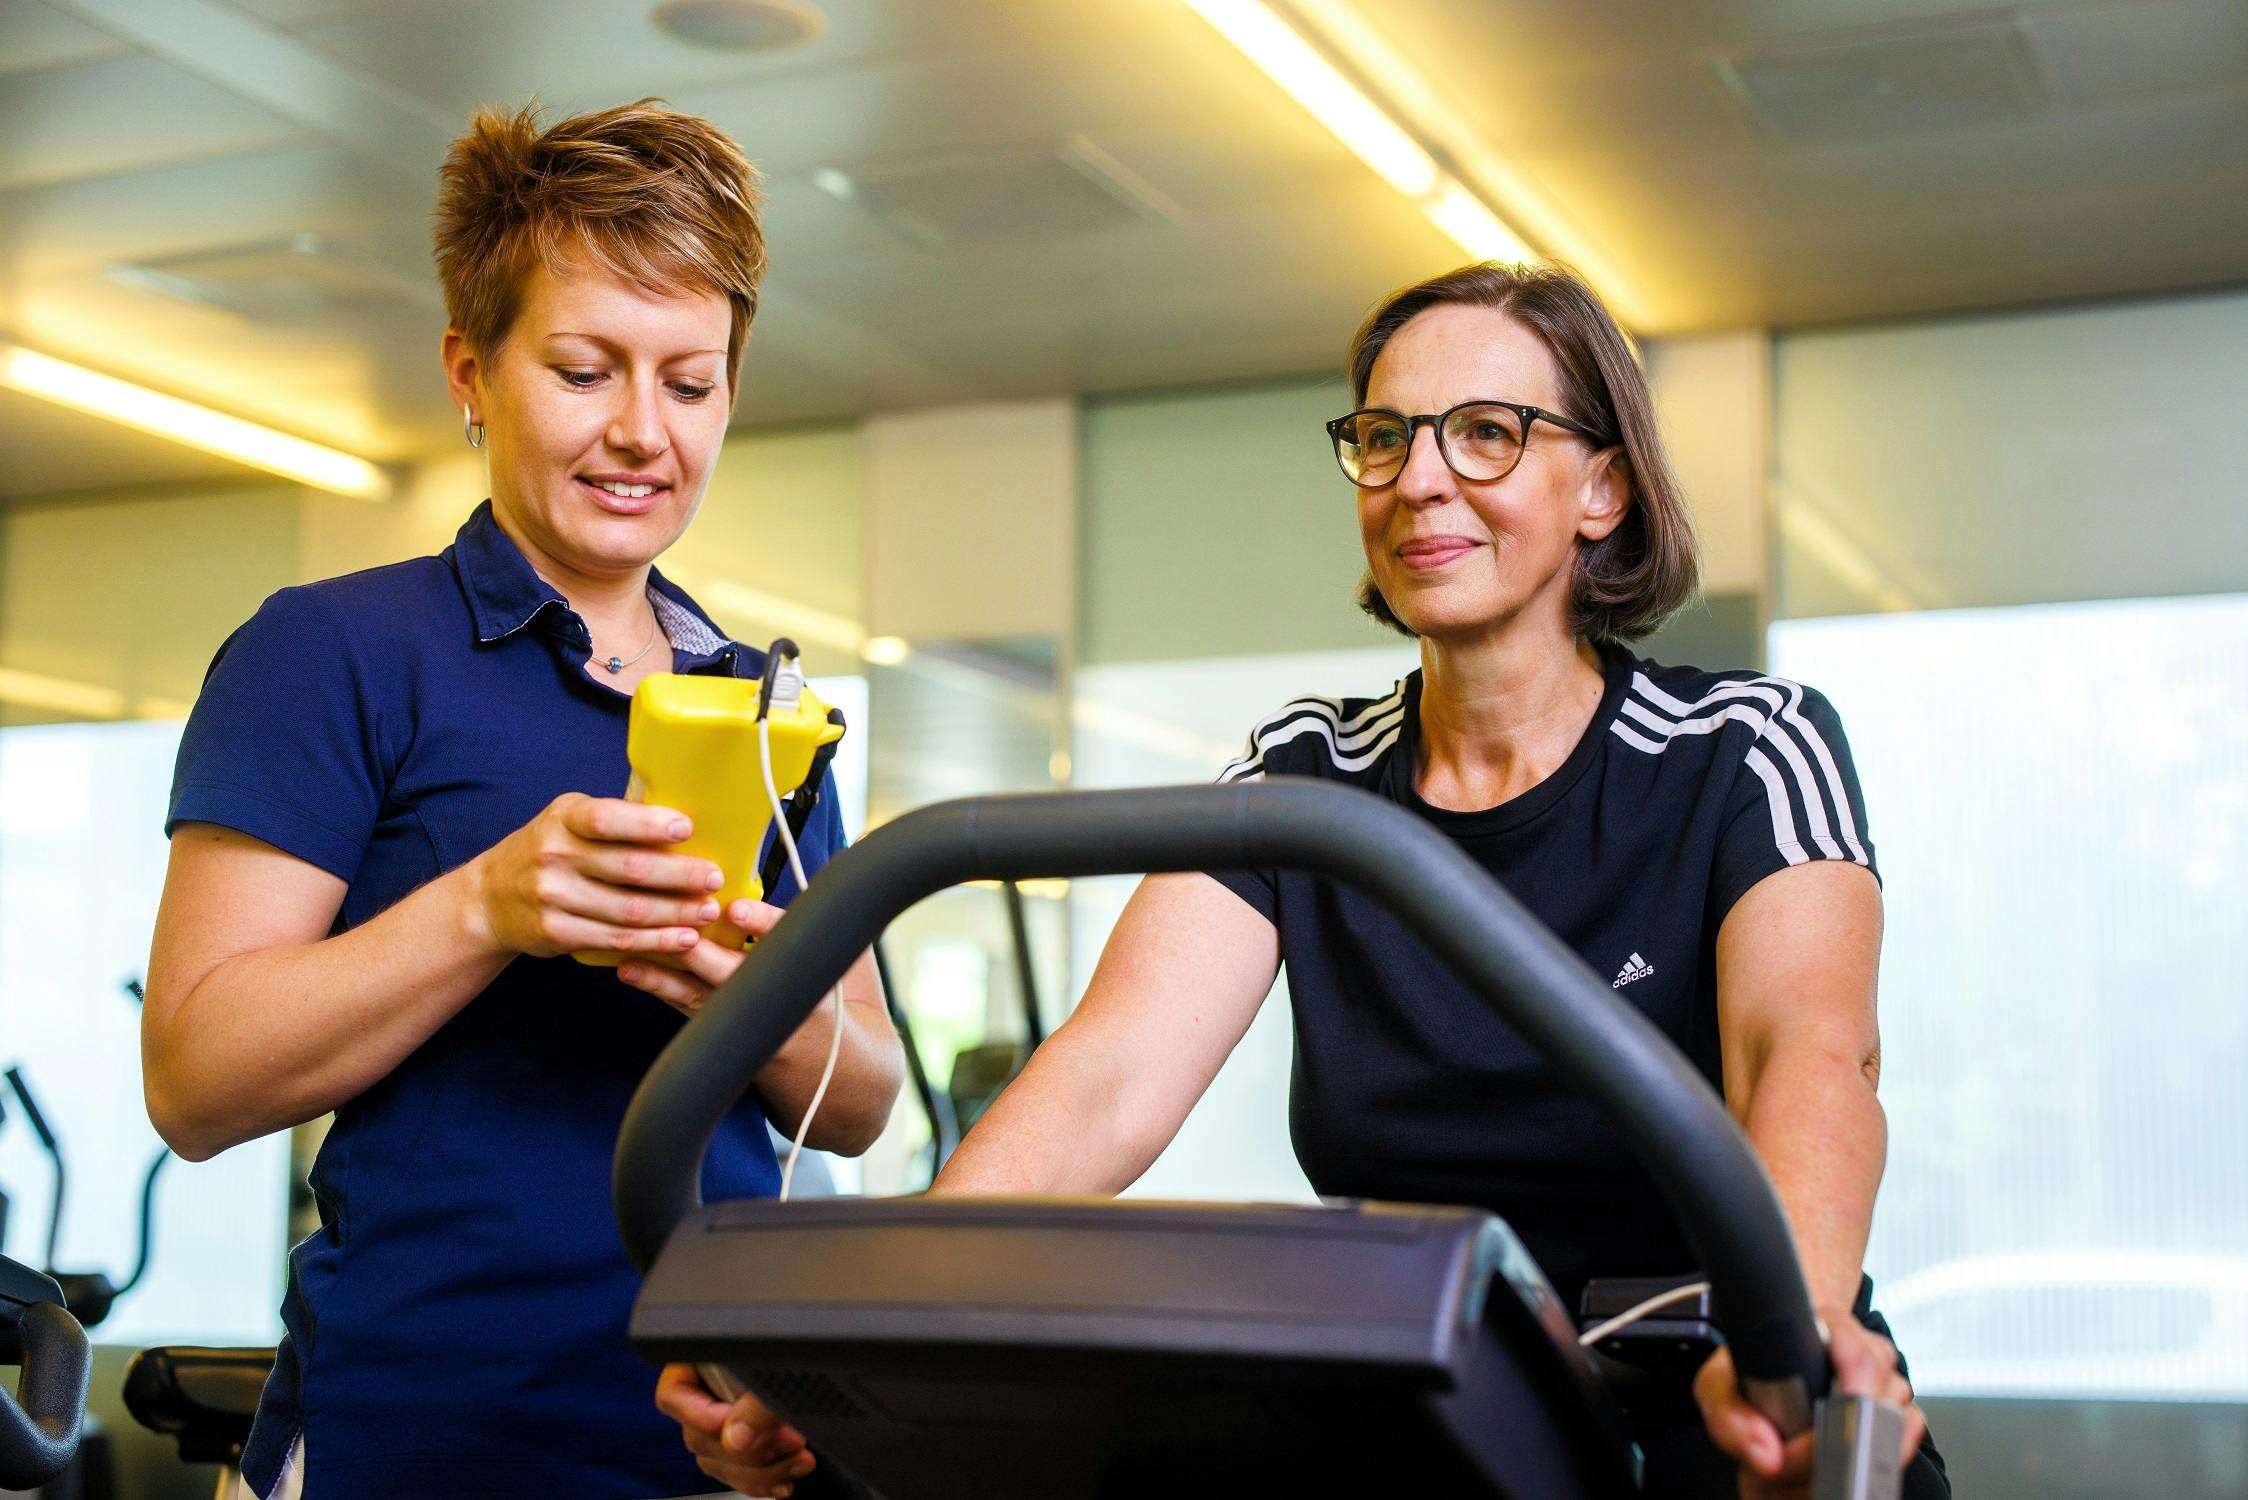 Zwei Frauen im Fitnessstudio, eine beim Training auf dem Laufband und die andere mit einem Smartphone.